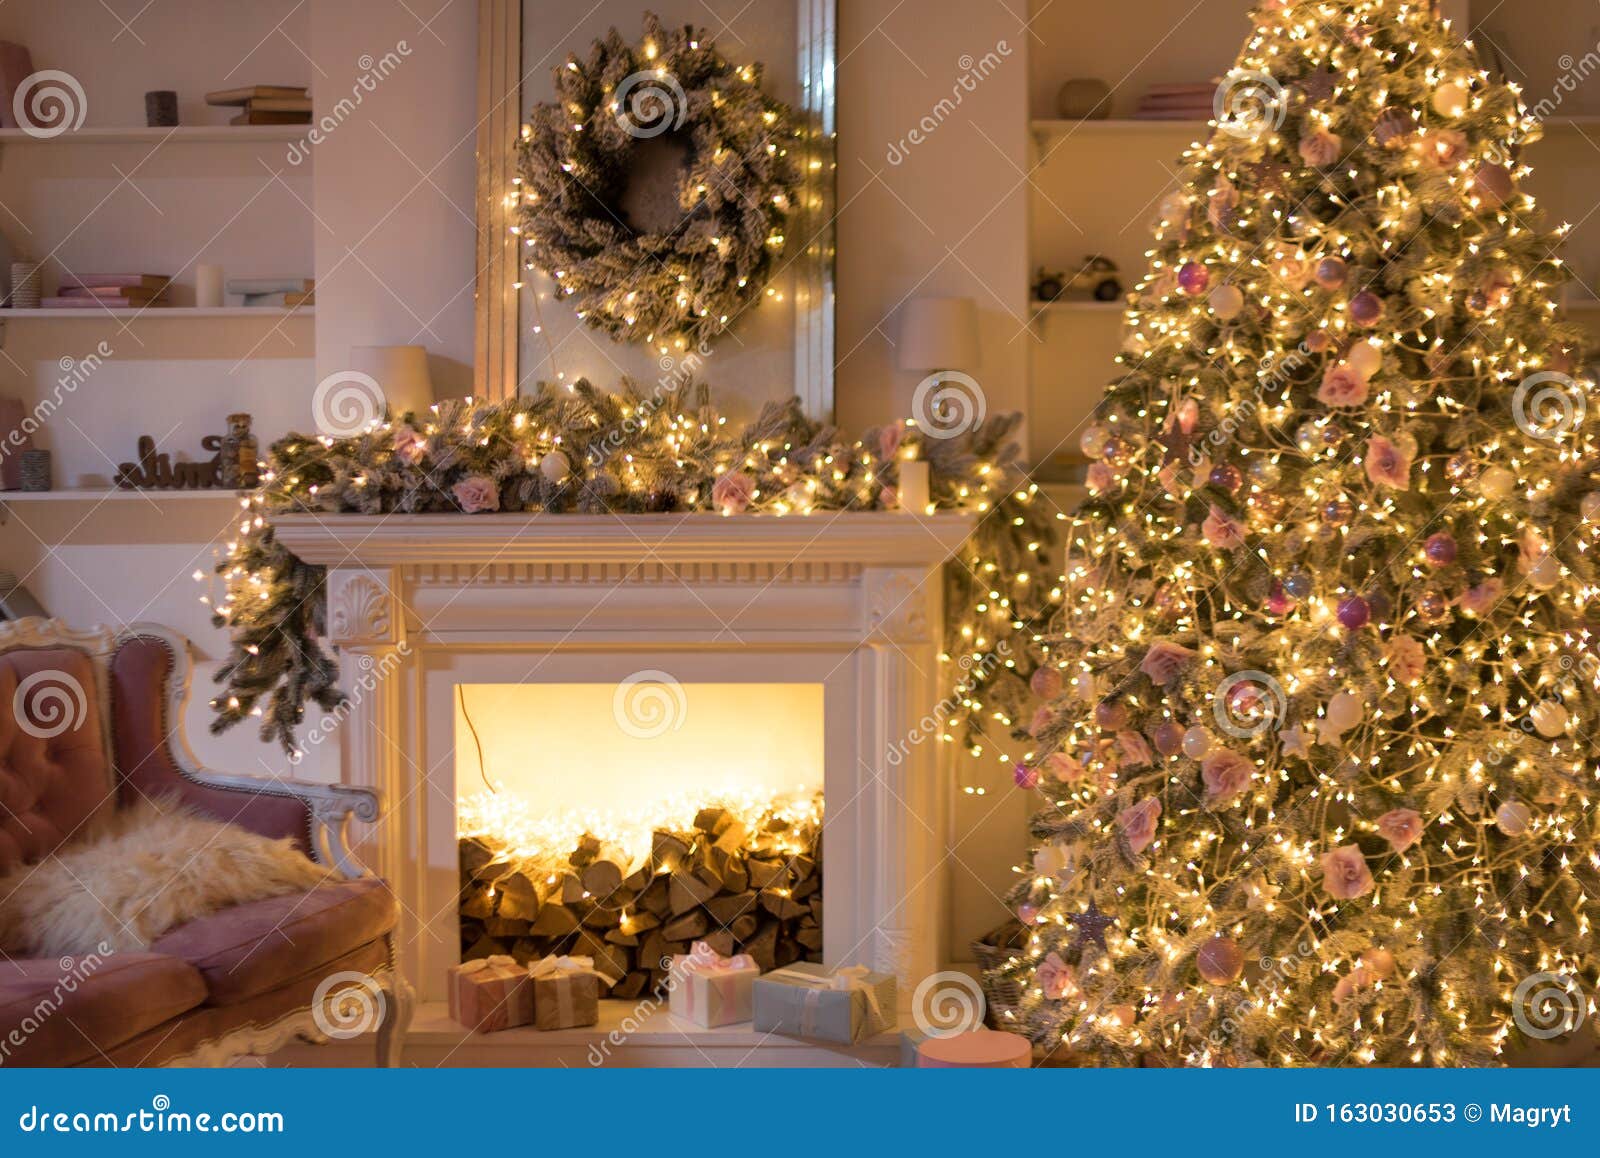 Phòng Giáng sinh: Bầu không khí Giáng sinh đang ngập tràn trong không gian trang trí đón chào mùa lễ hội tuyệt vời nhất trong năm. Hãy cùng chiêm ngưỡng hình ảnh phòng Giáng sinh để bạn có được cái nhìn đầy ấm áp và ấn tượng.